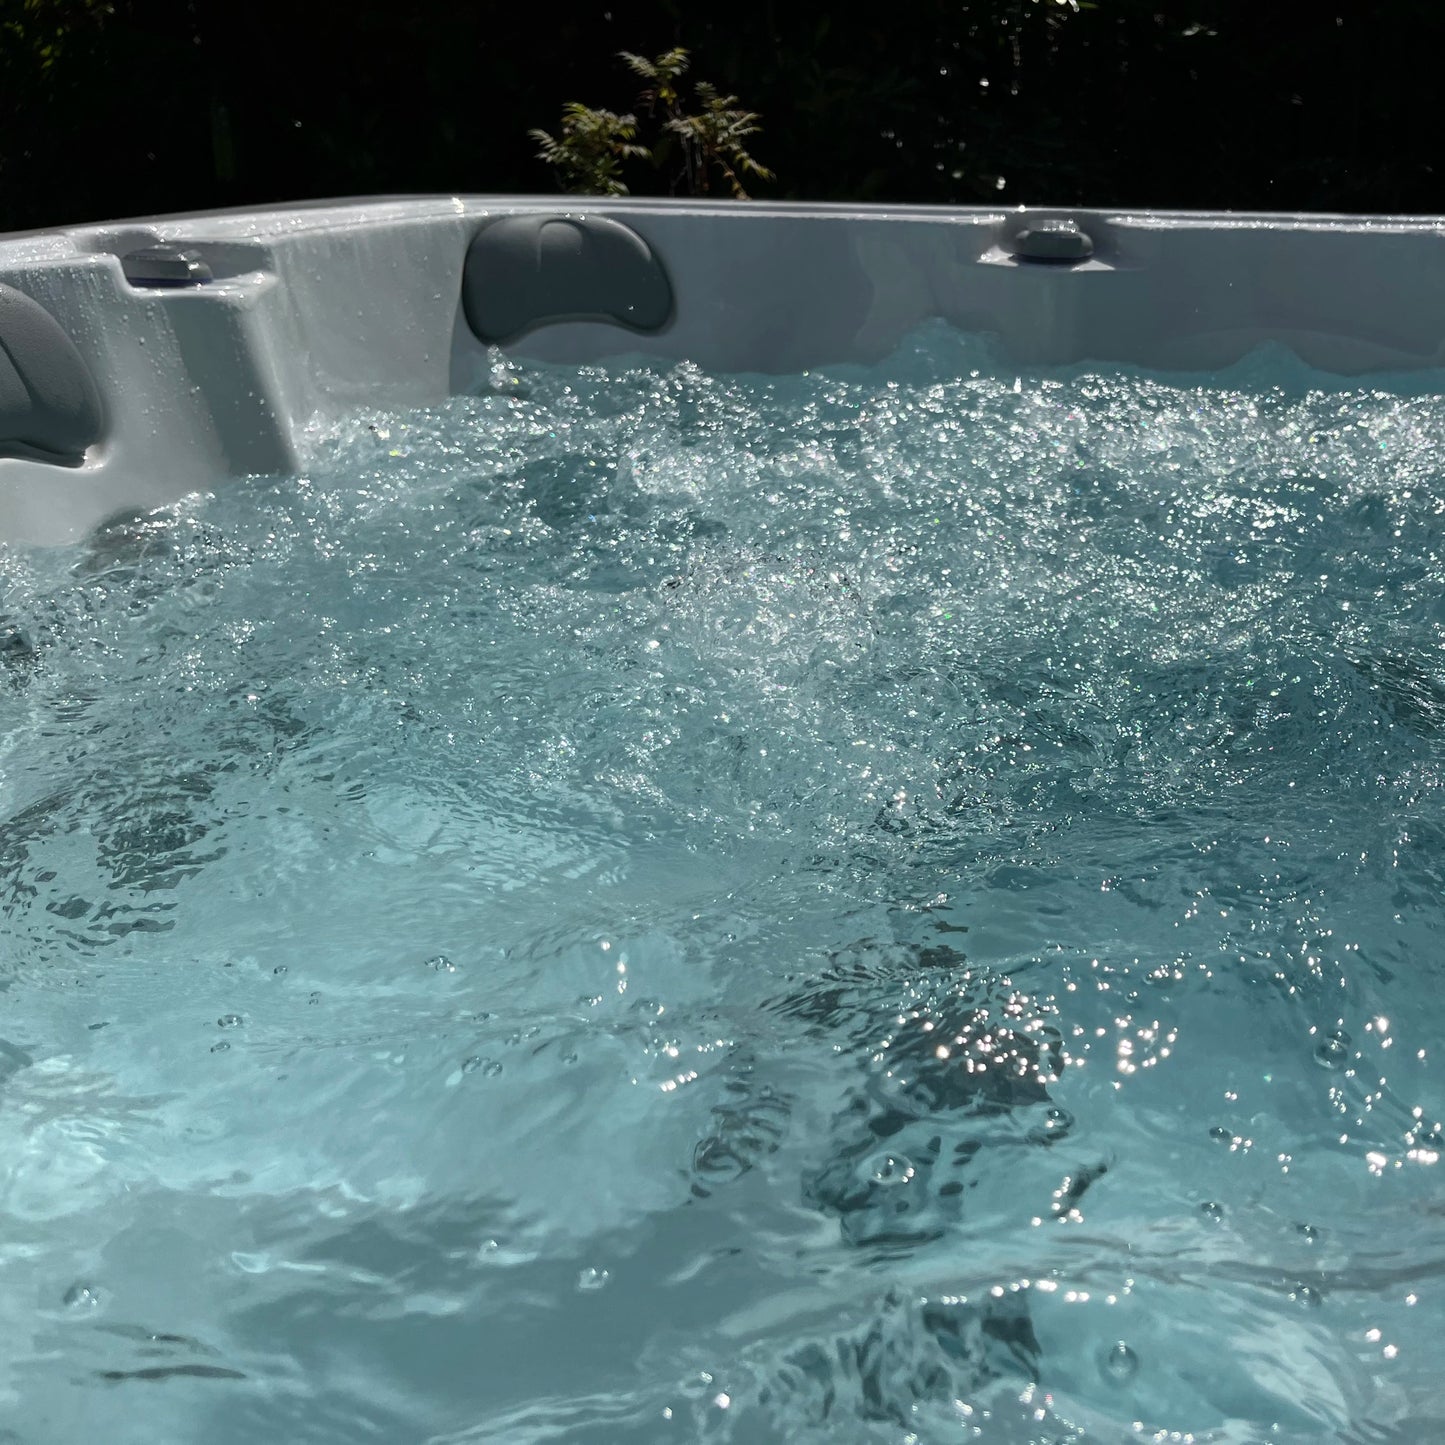 RX-562 Heatwave - 6 Person Hot Tub Oasis Spas